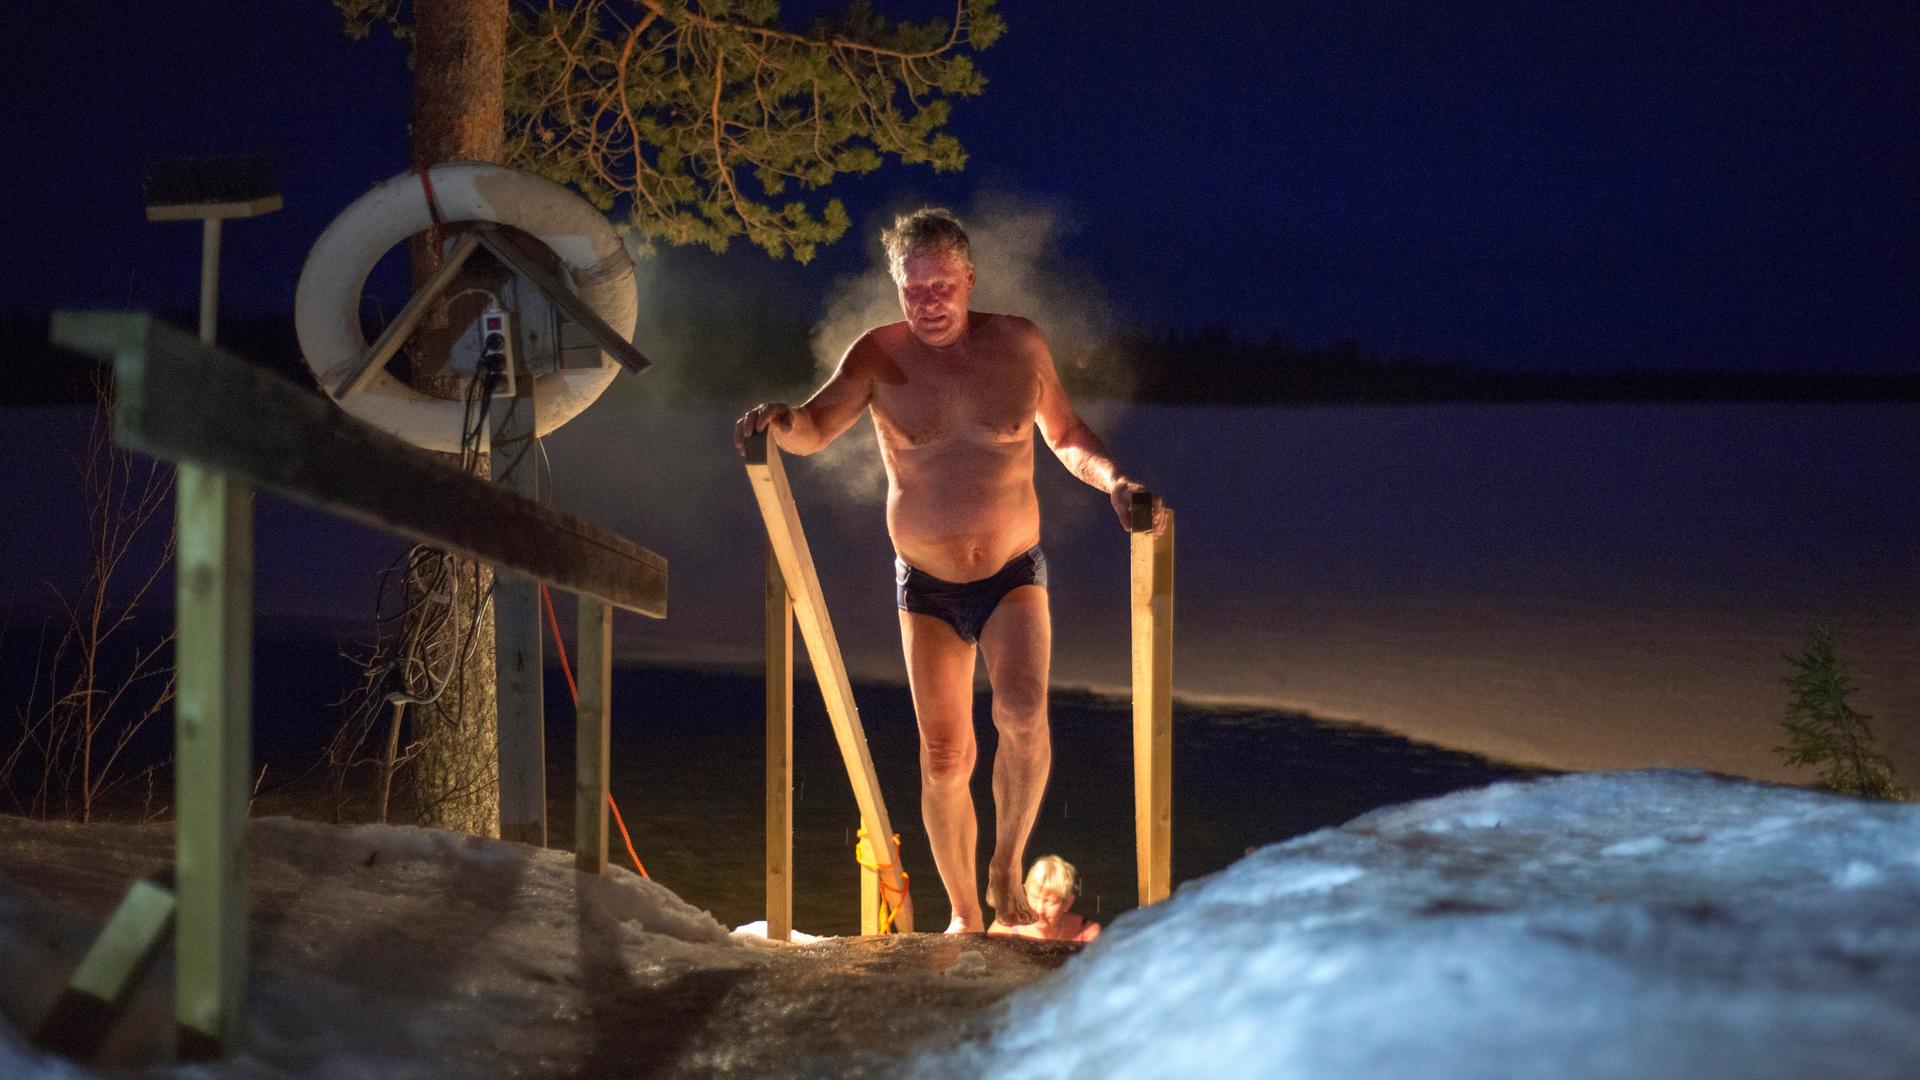 Ein dampfender Mann nach einem Saunagang in der kalten Nachtluft Lapplands